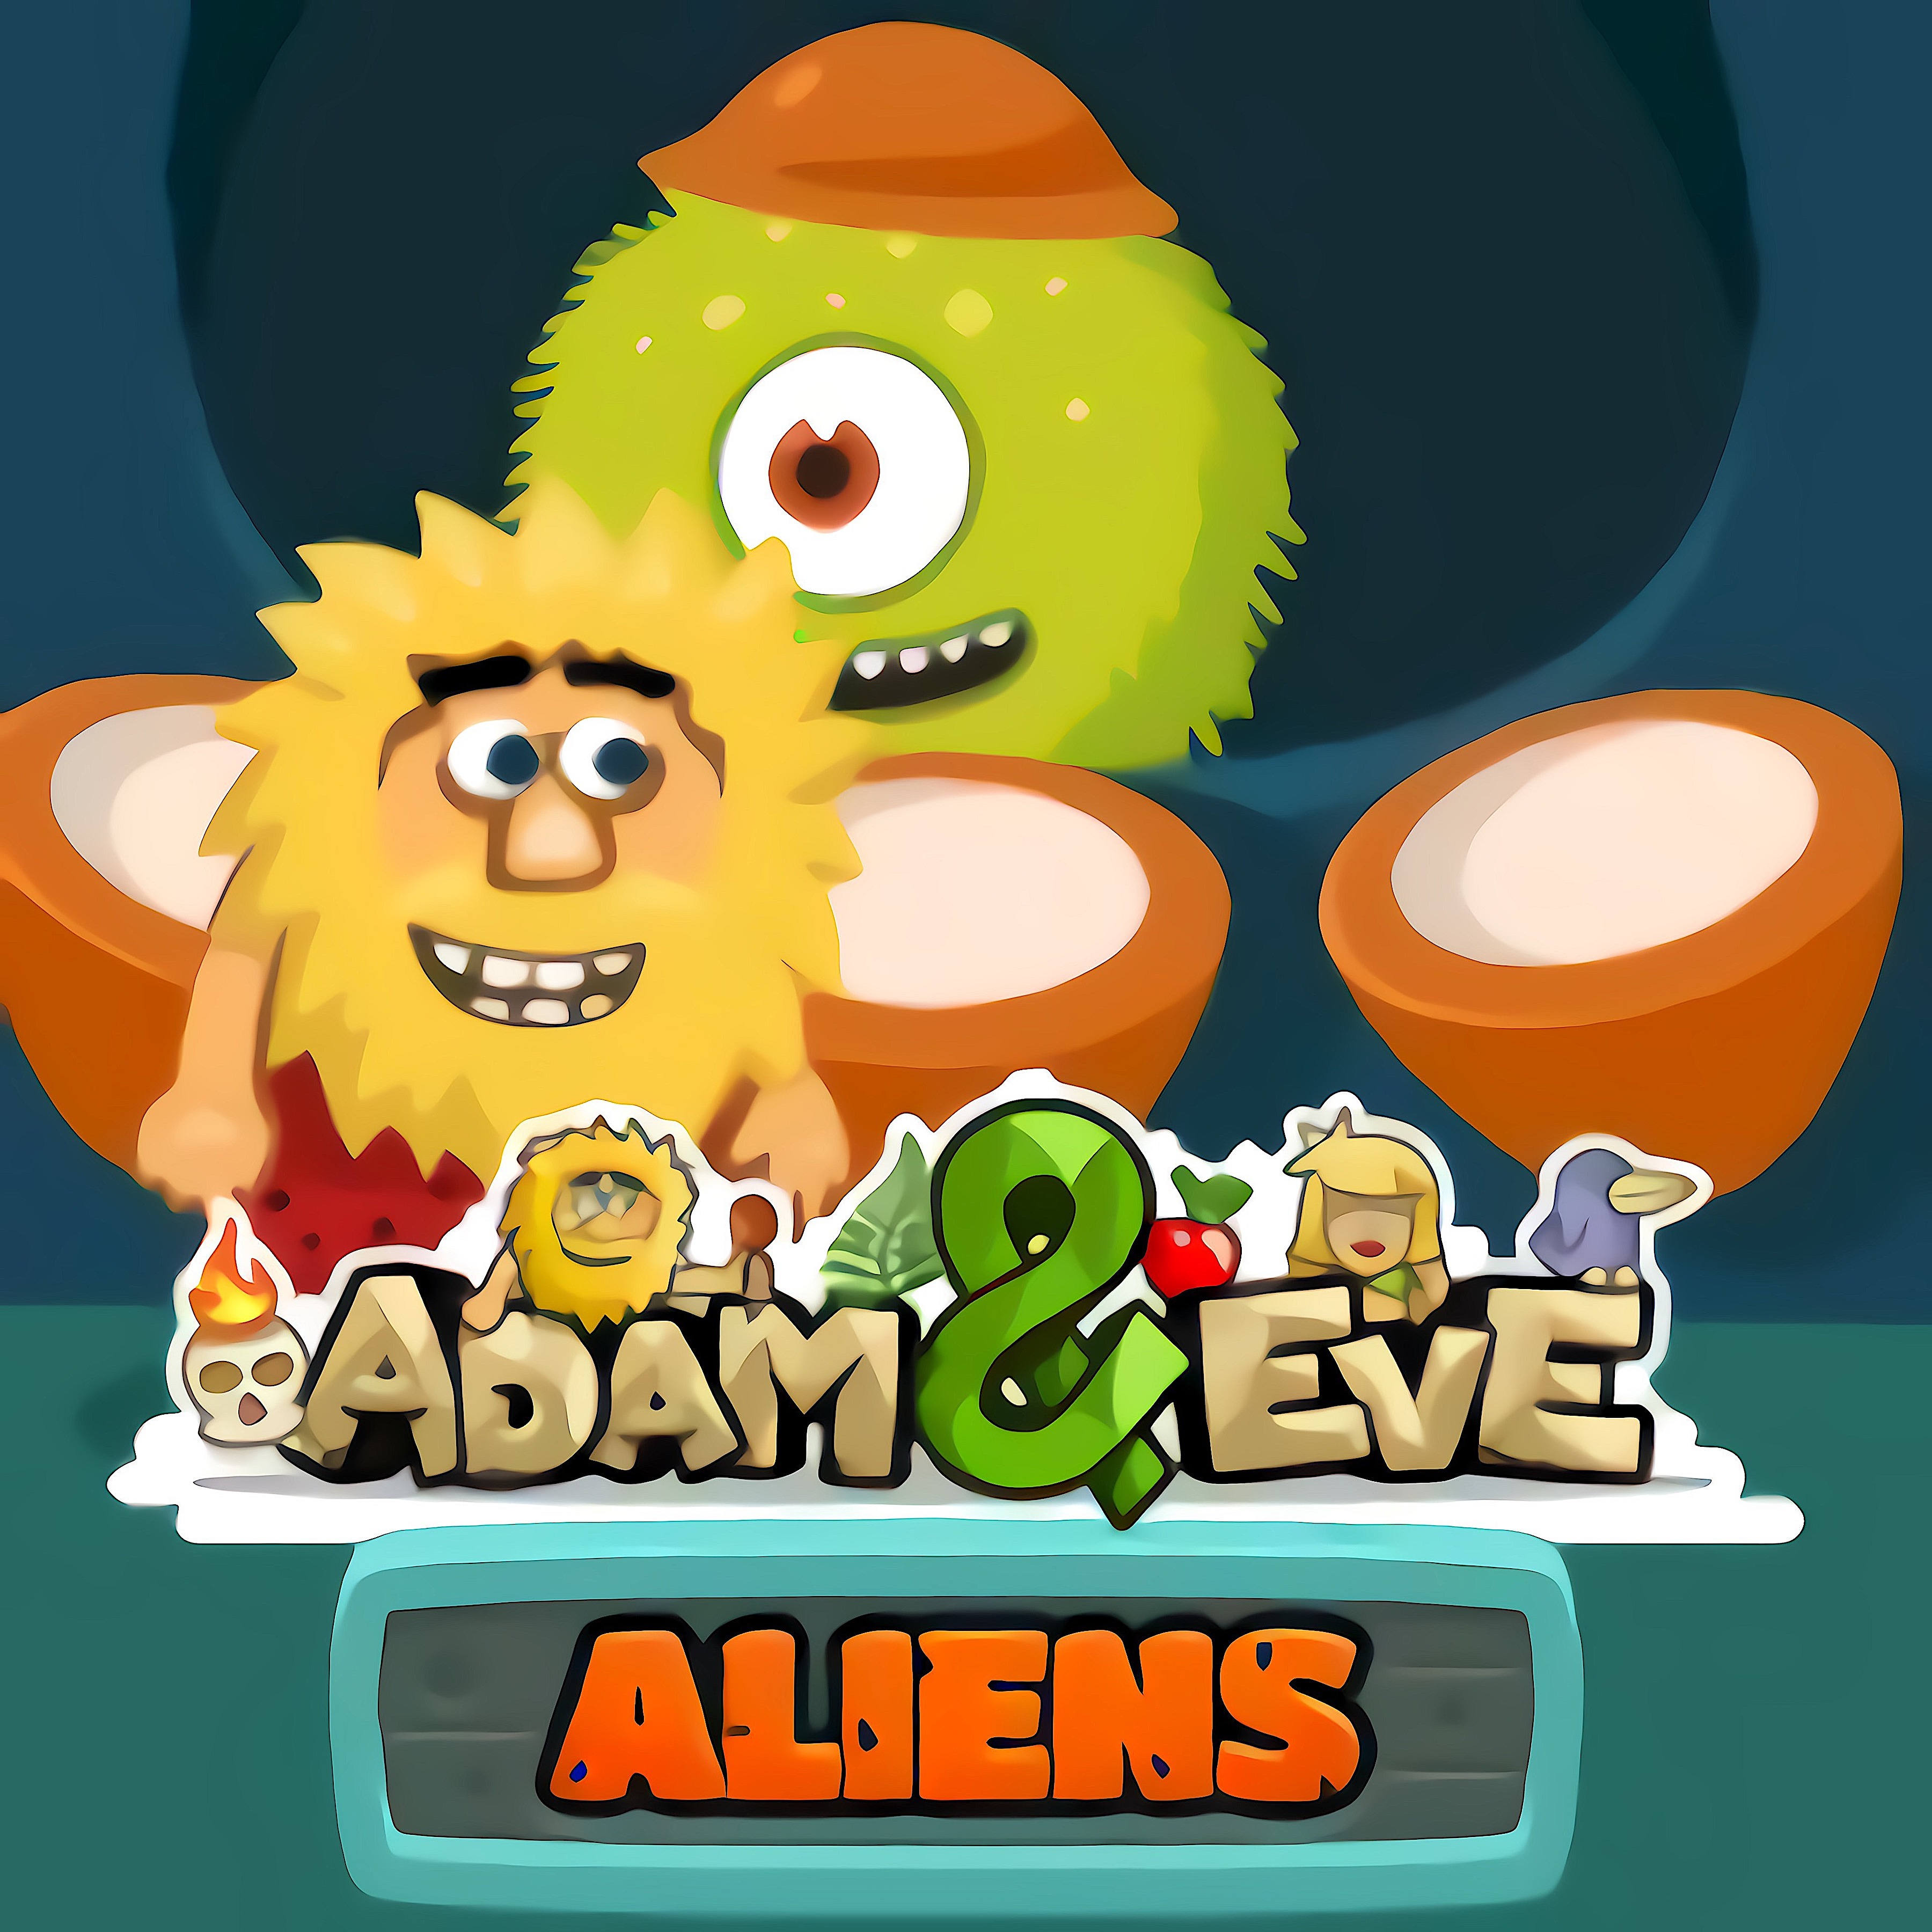 Adam and Eve Aliens